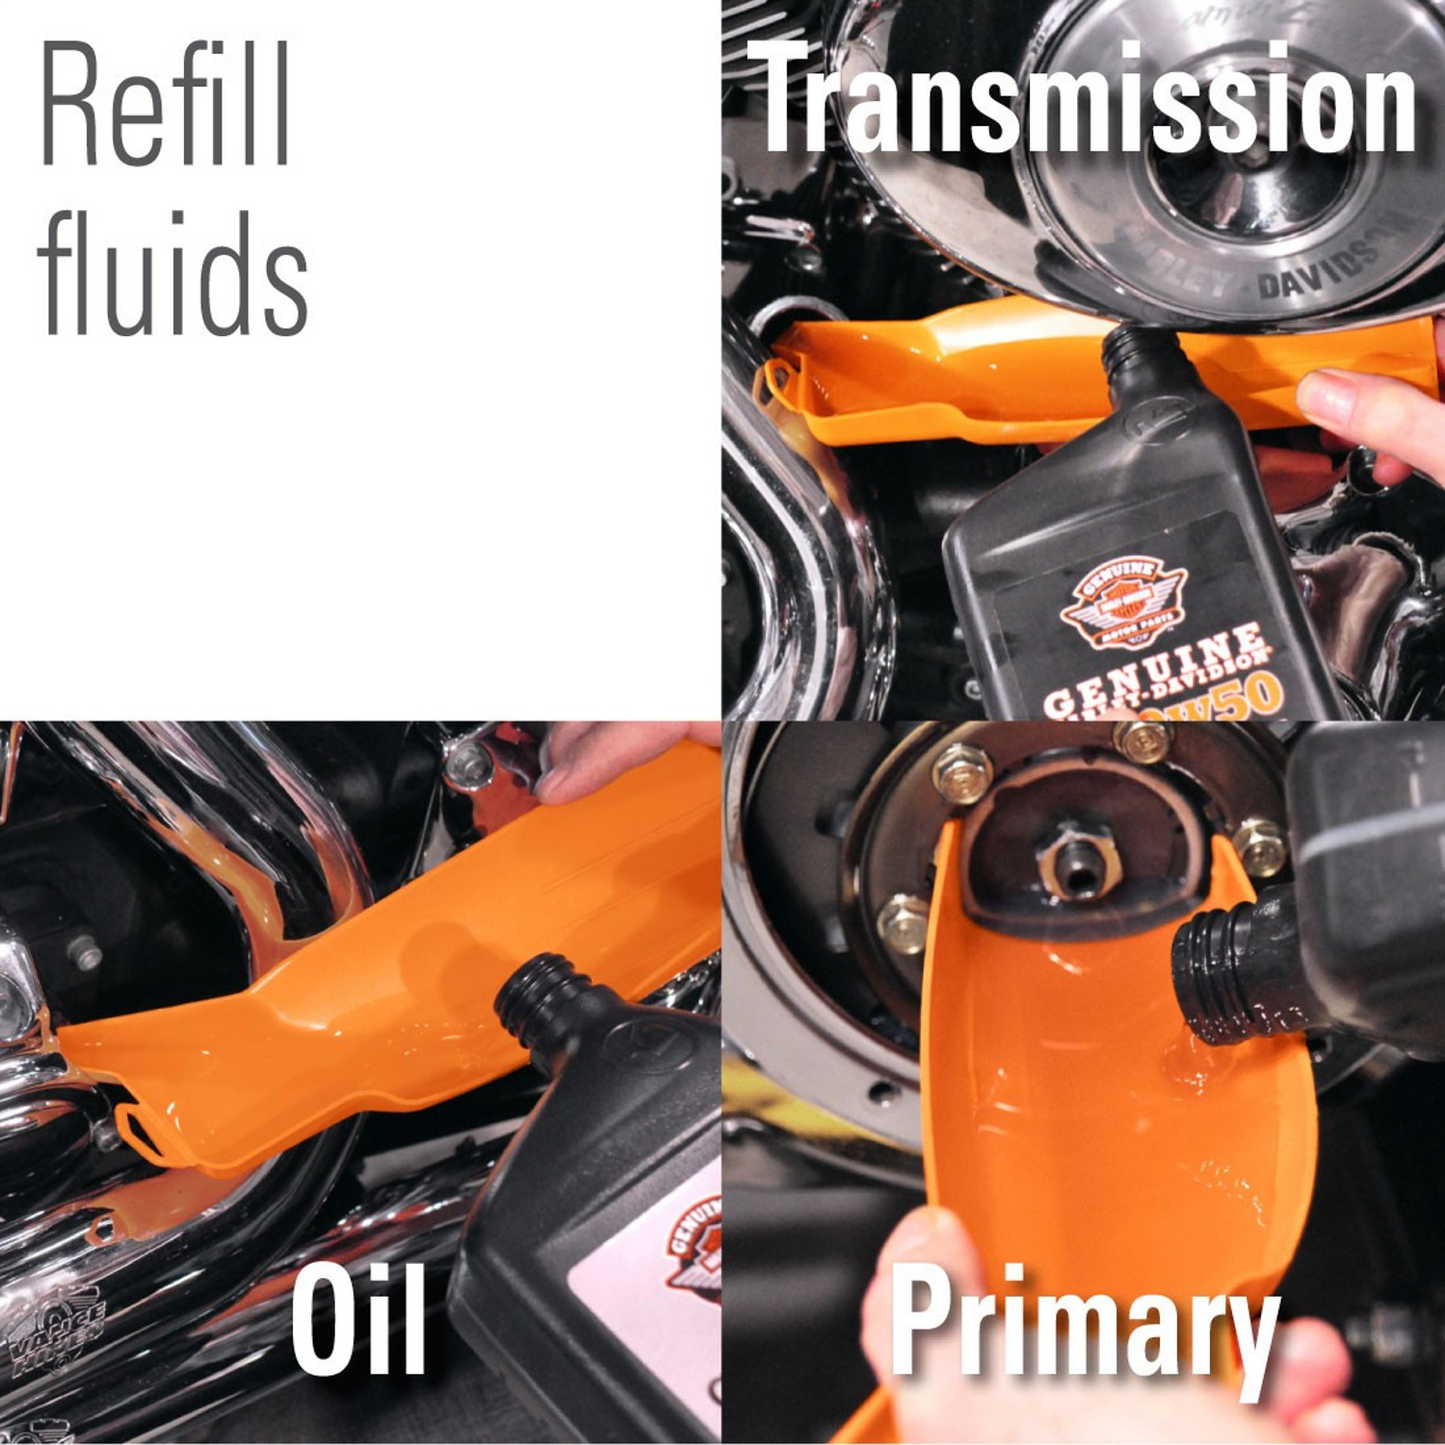 Ernst 960 Greg's Oil Filter Funnel For Harley Davidson Motorcycles